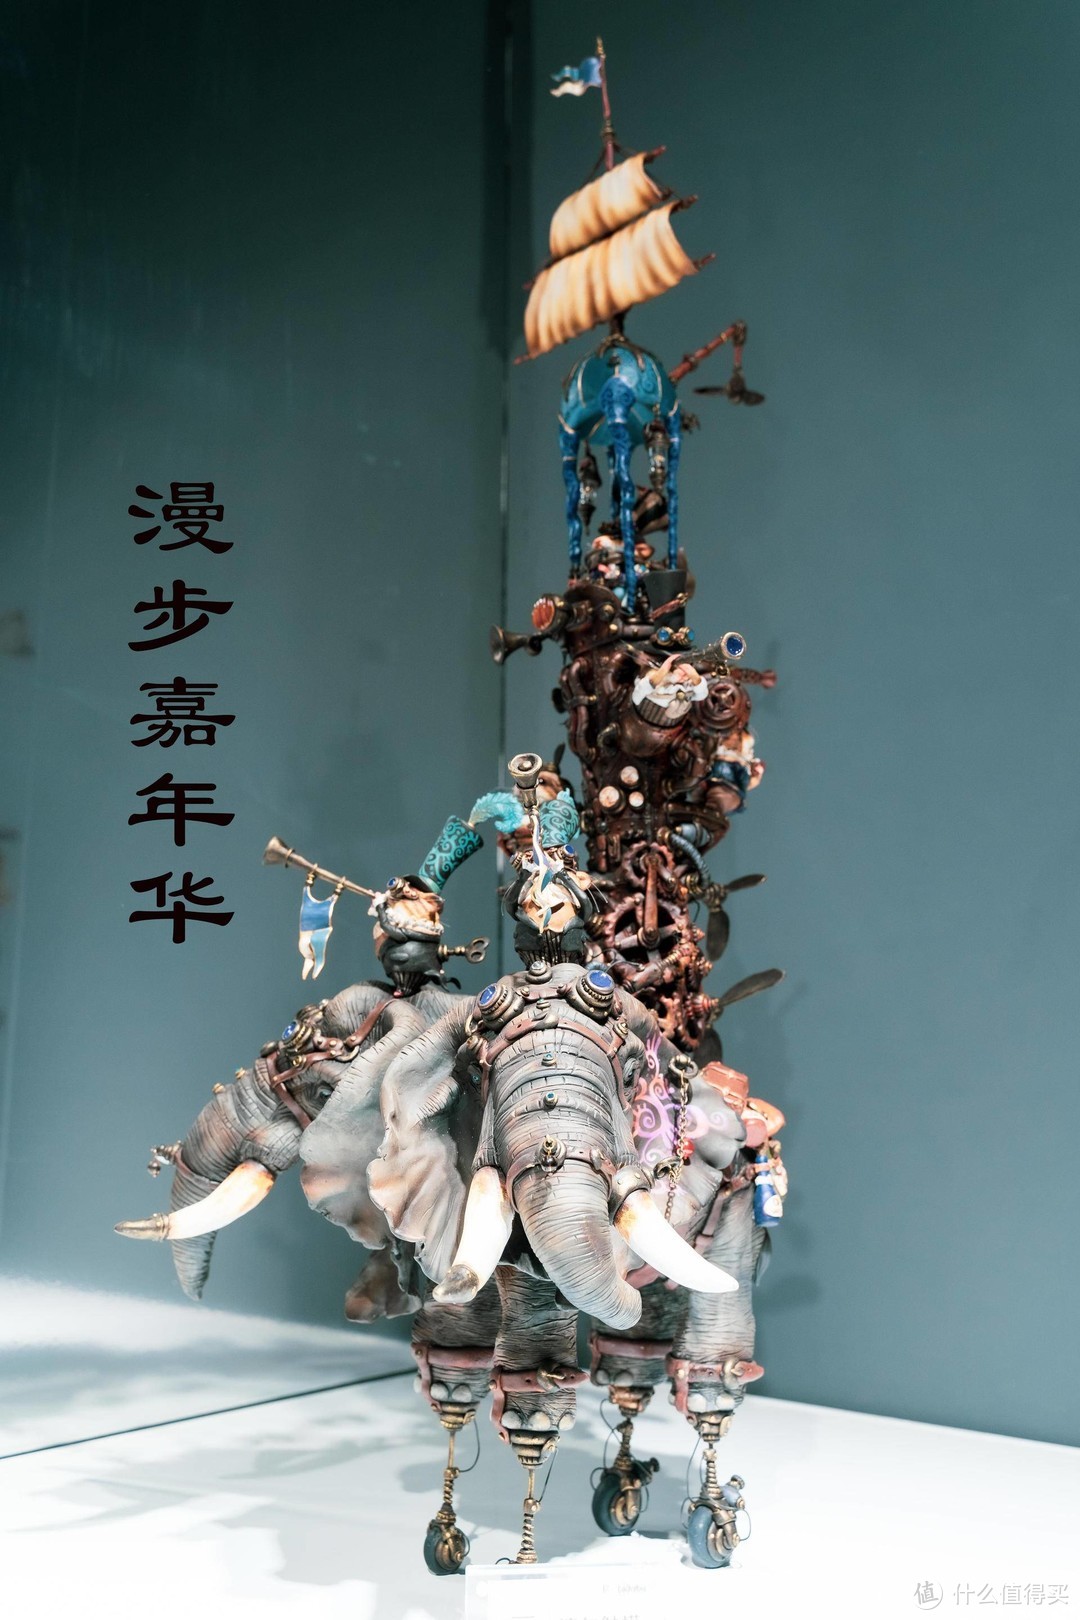 蒸汽朋克，狂飙之心——2020镰田光司北京个展